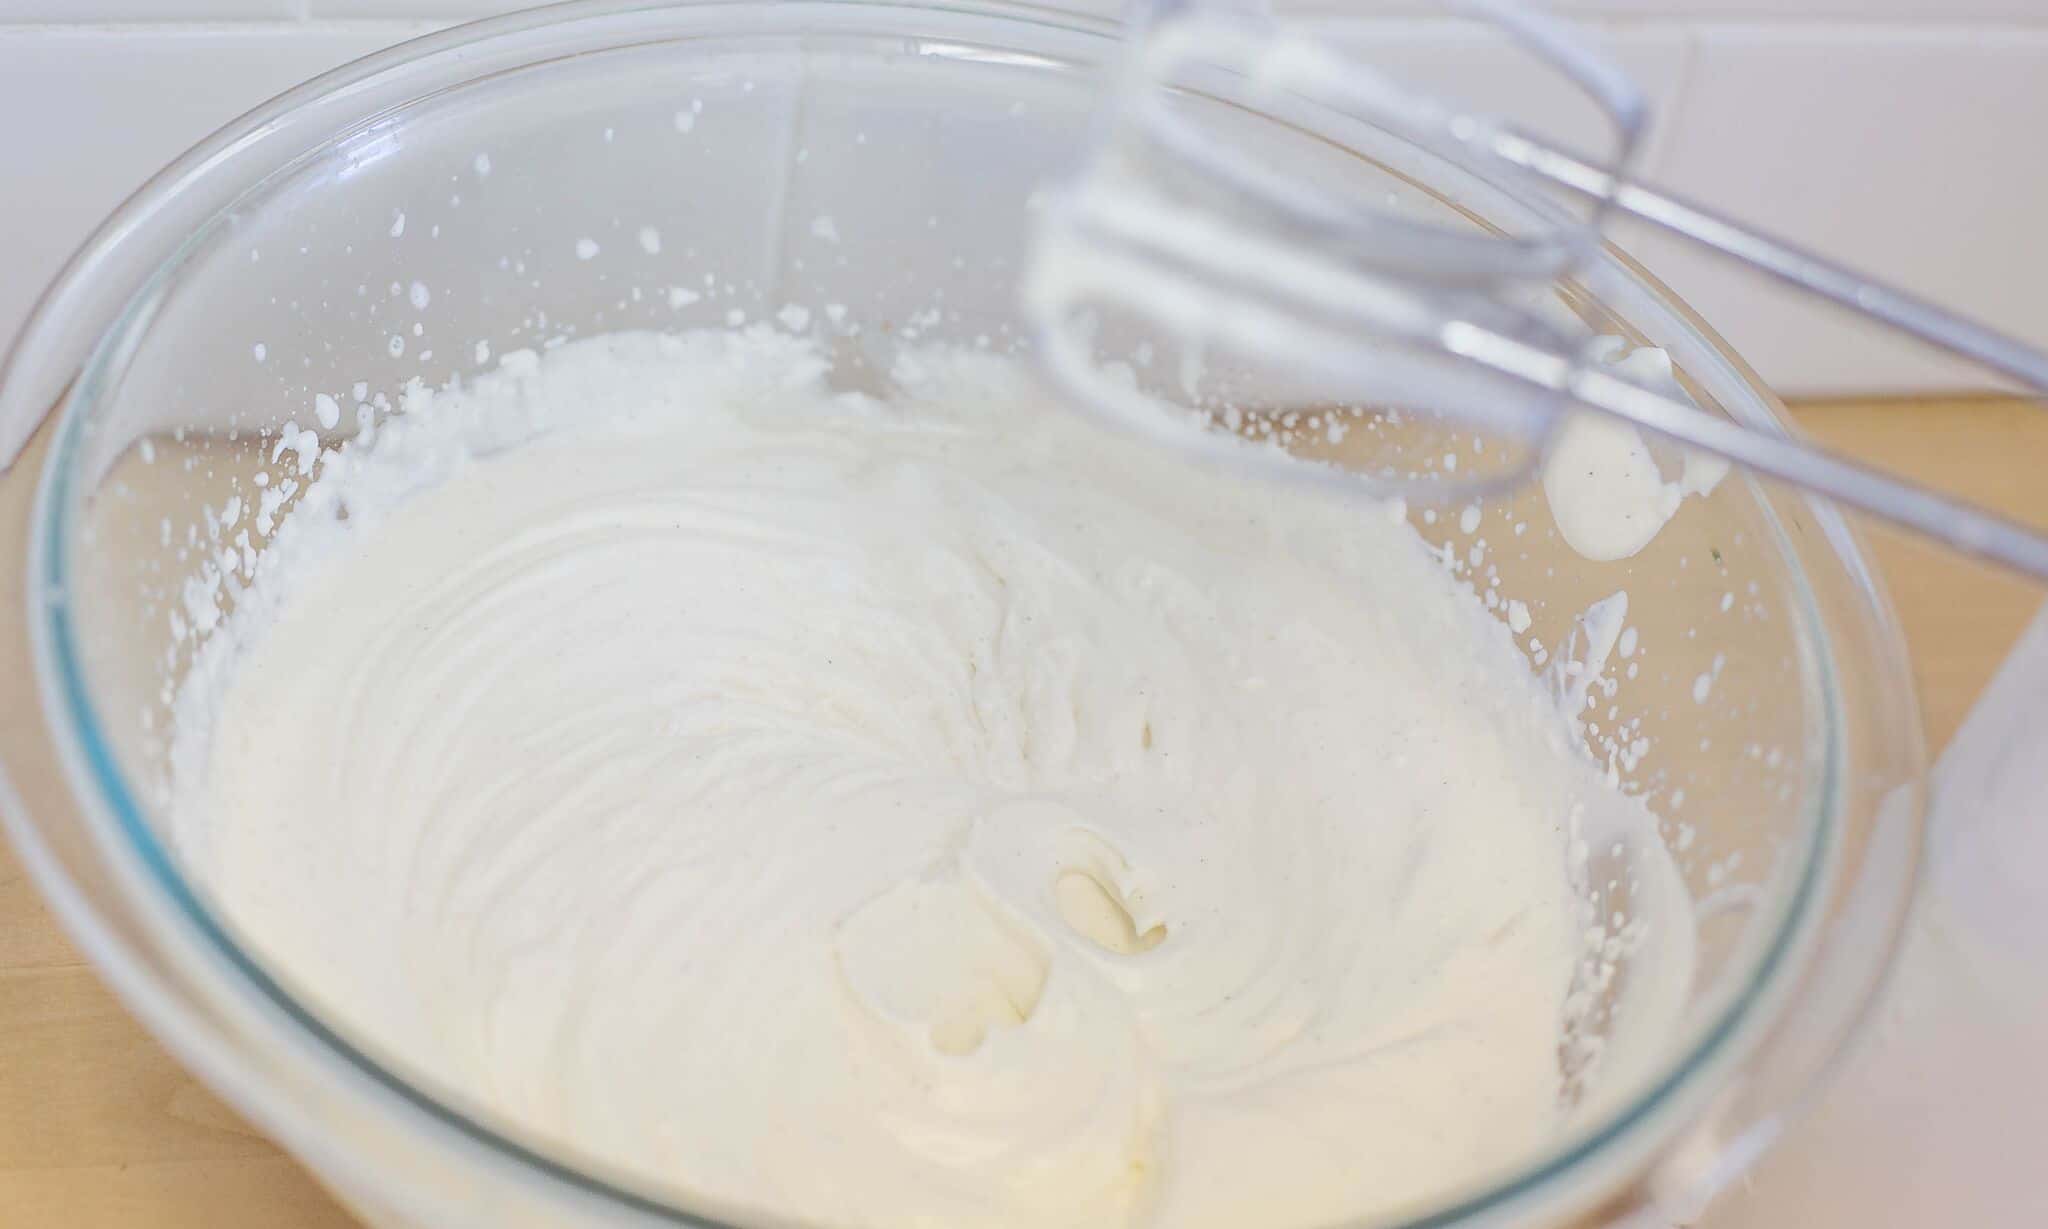 Beat cream on high speed until it begins to thicken.